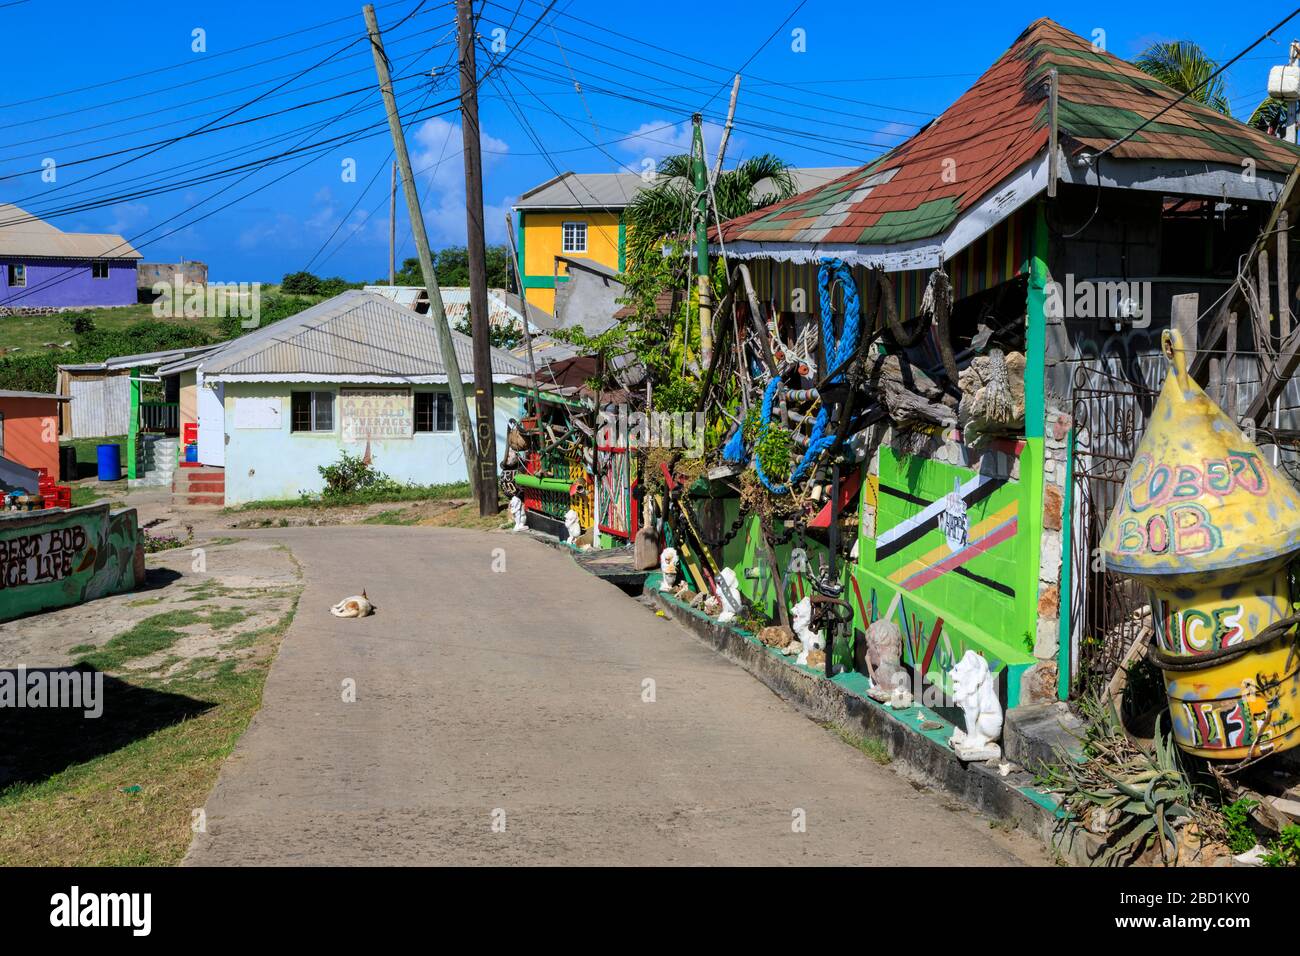 Tranquilo Caribe, edificios coloridos, perritos, calle principal, pueblo, Mayreau, Granadinas, San Vicente y las Granadinas, Caribe Foto de stock